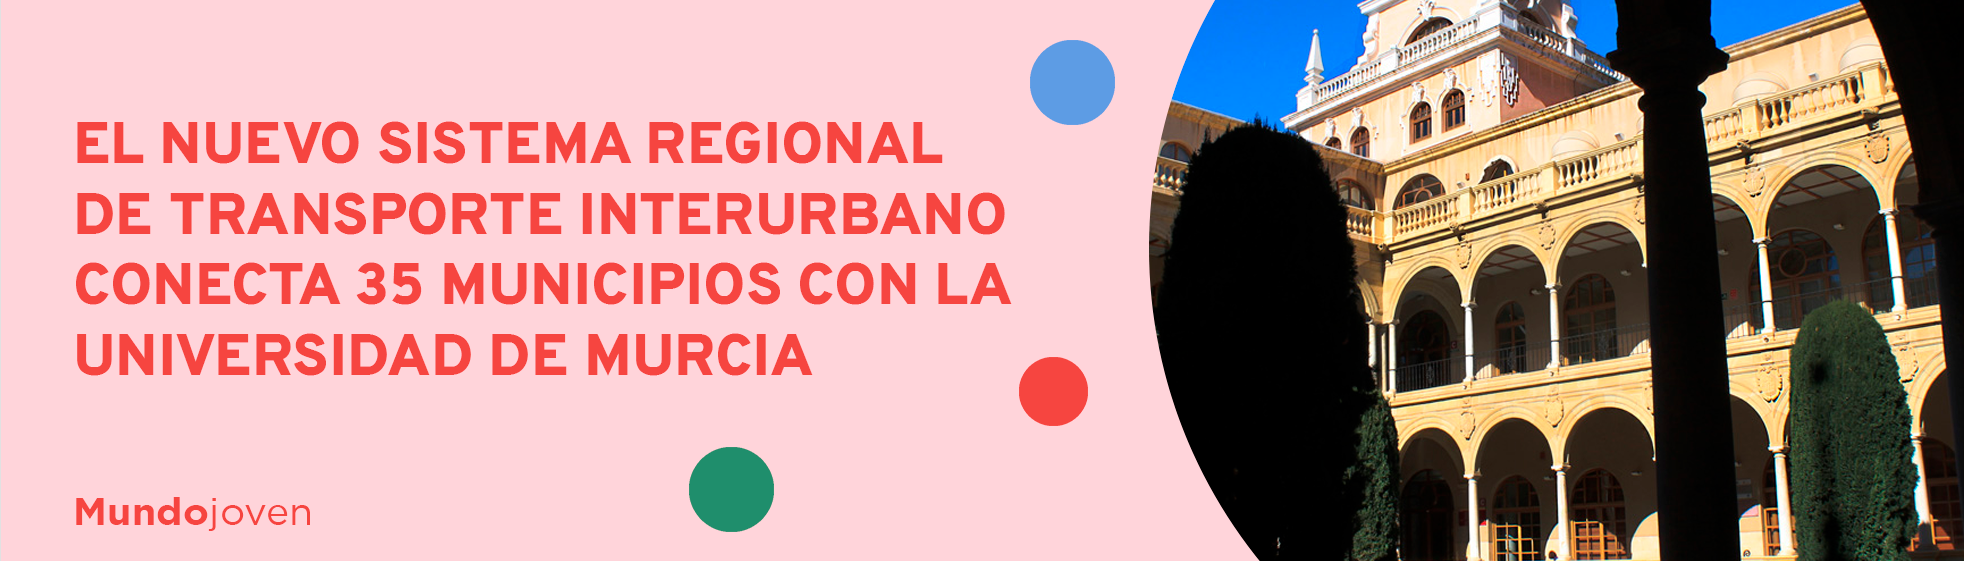 El nuevo sistema regional de transporte interurbano conecta 35 municipios con la Universidad de Murcia